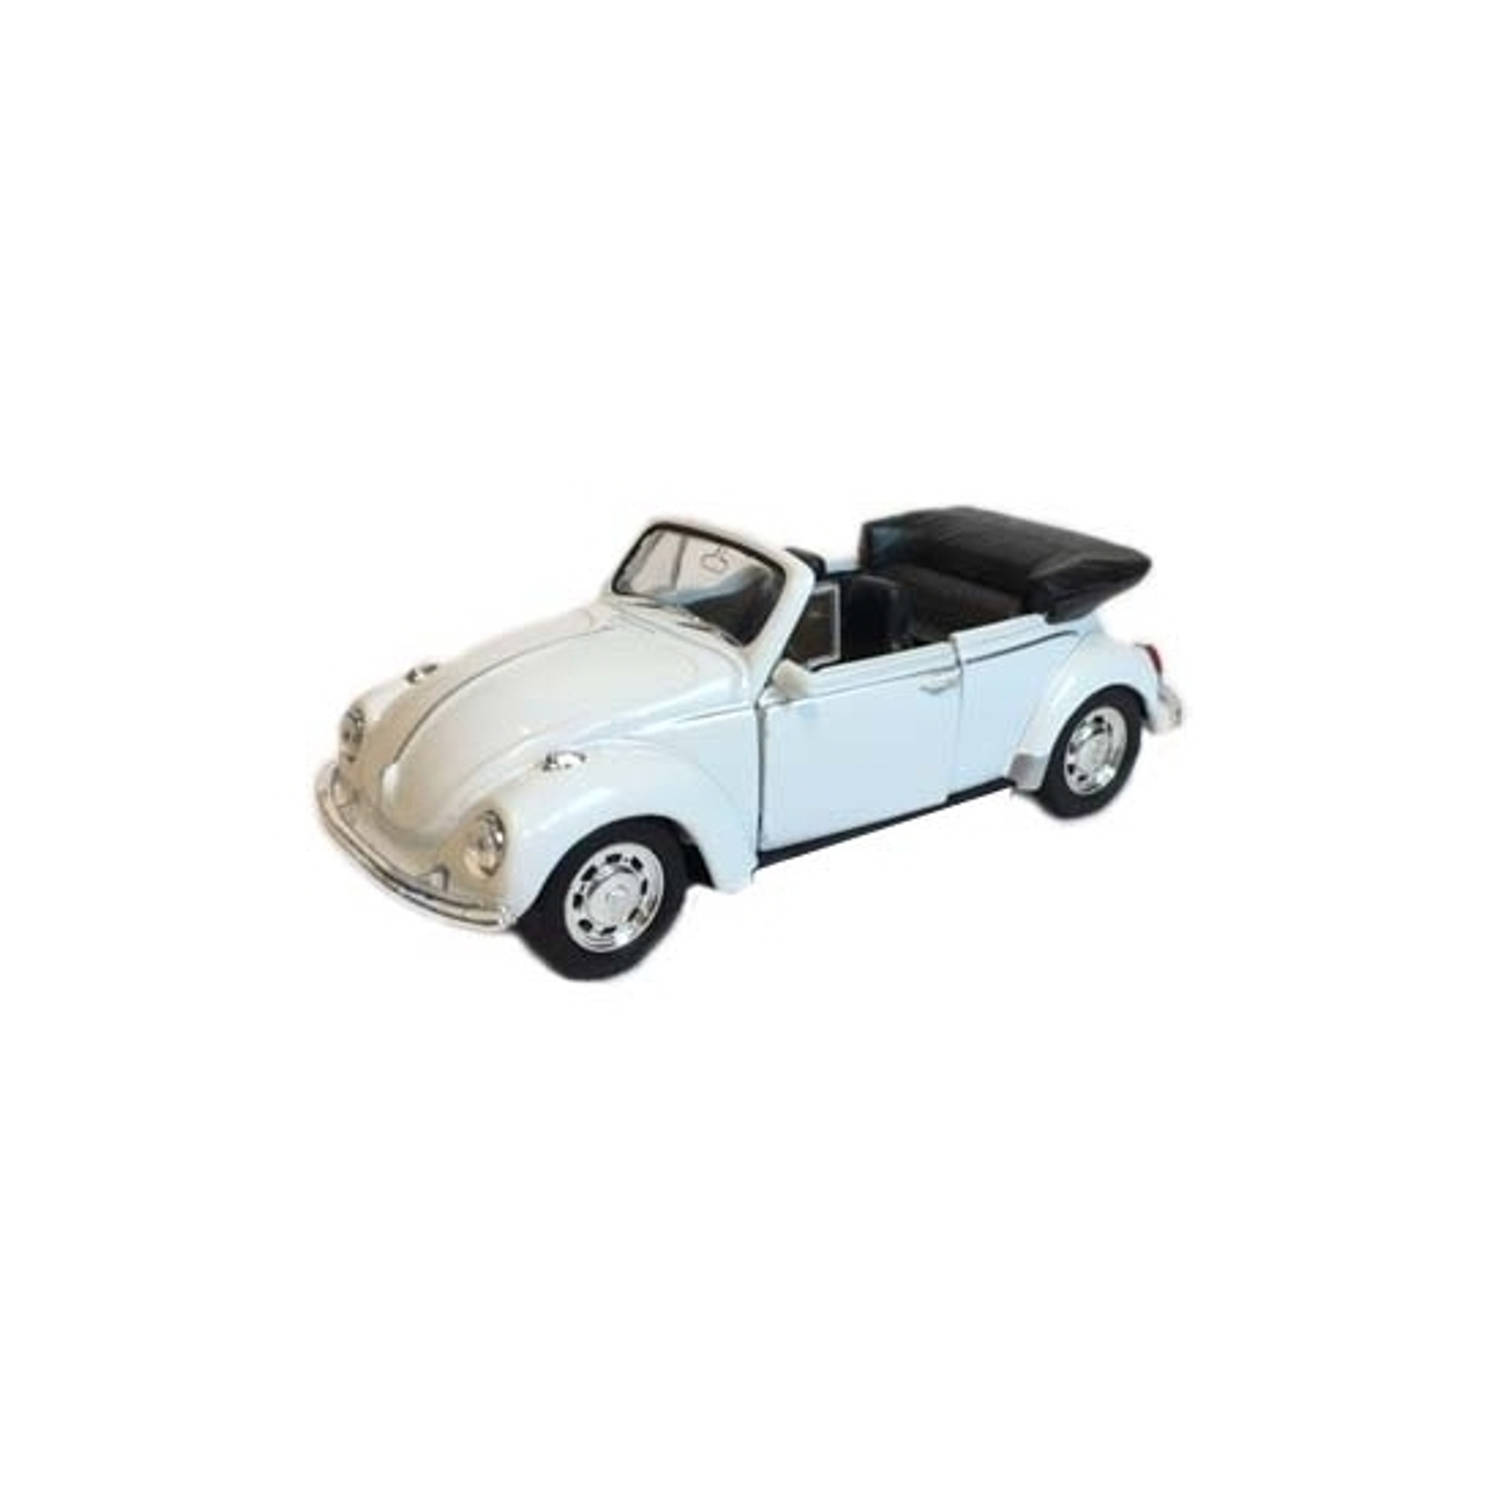 Speelgoed volkswagen kever witte cabrio auto 12 cm